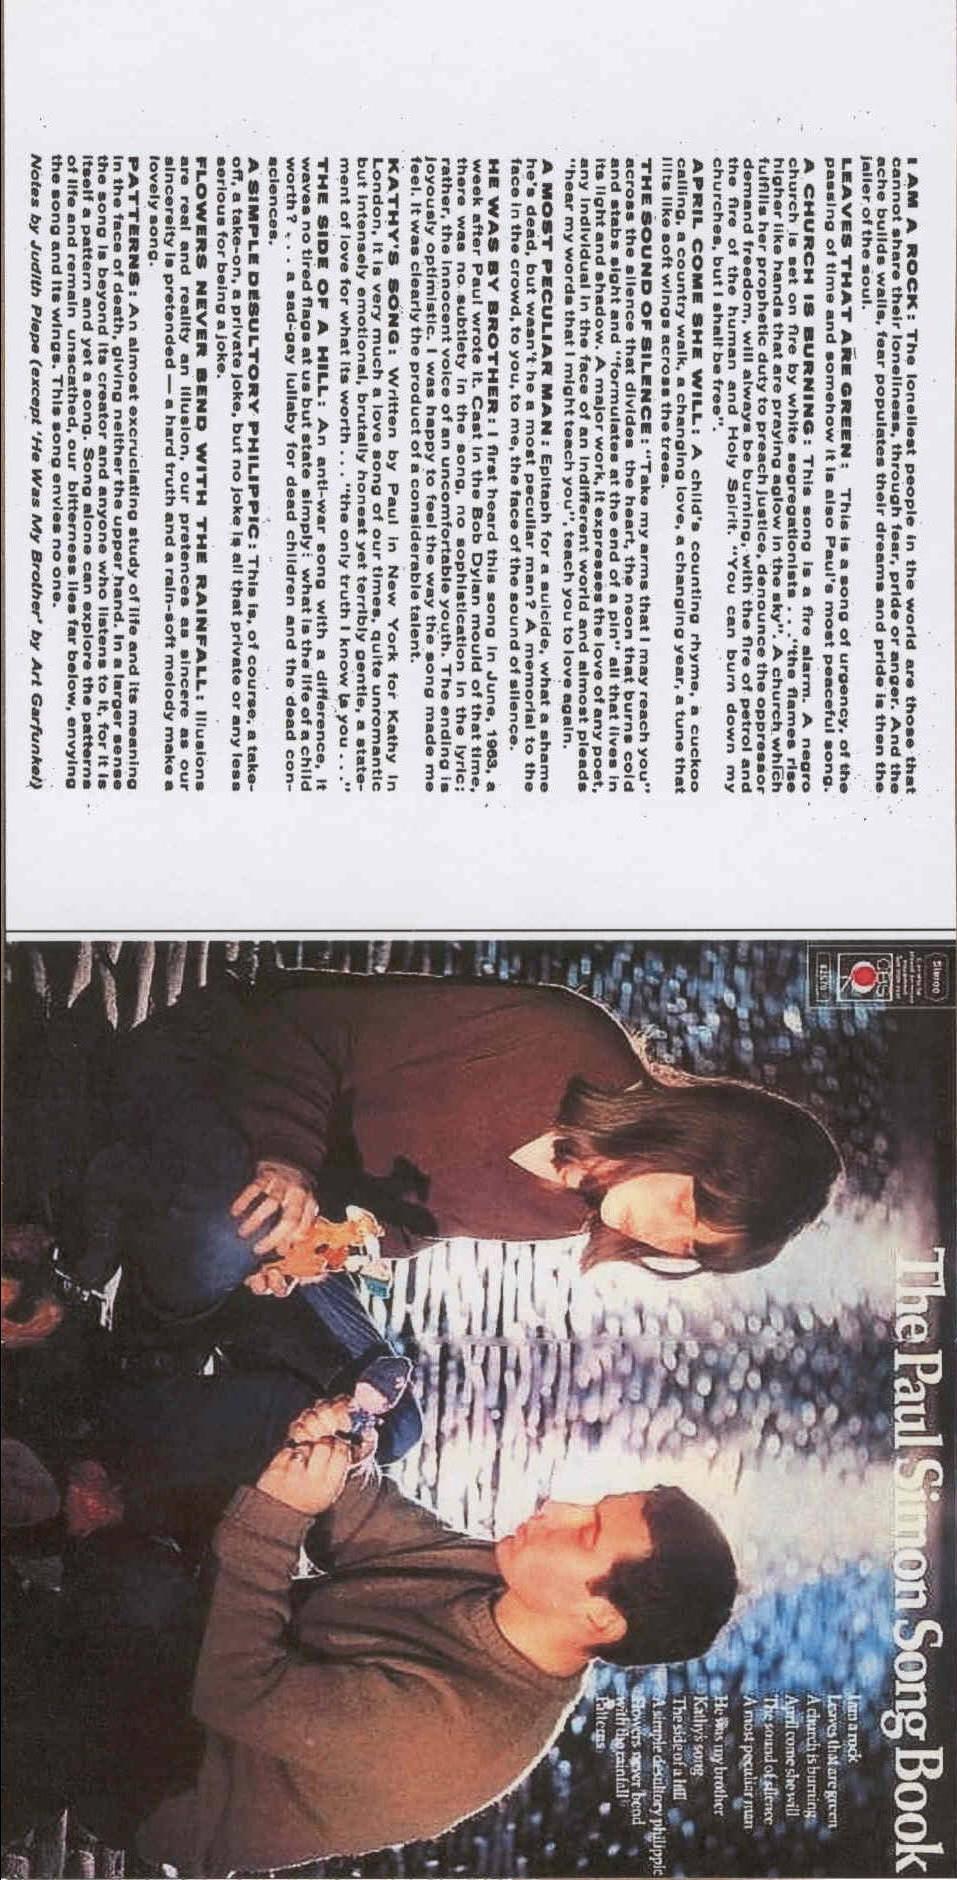 Paul Simon-The Essential Paul Simon (cd1) Full Album Zip